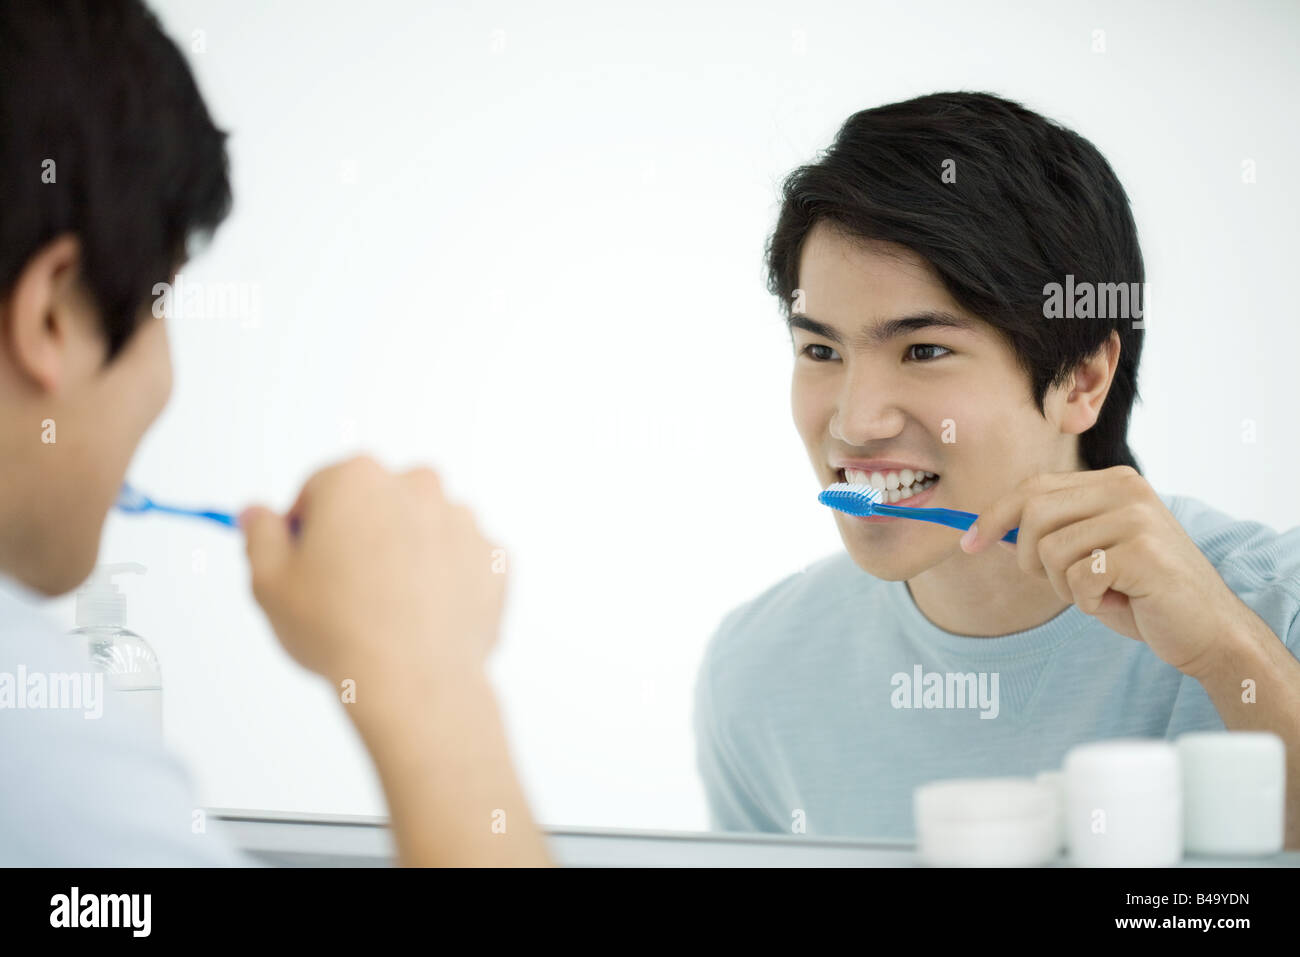 Junger Mann, Zähne putzen, selbst im Spiegel betrachten Stockfotografie -  Alamy